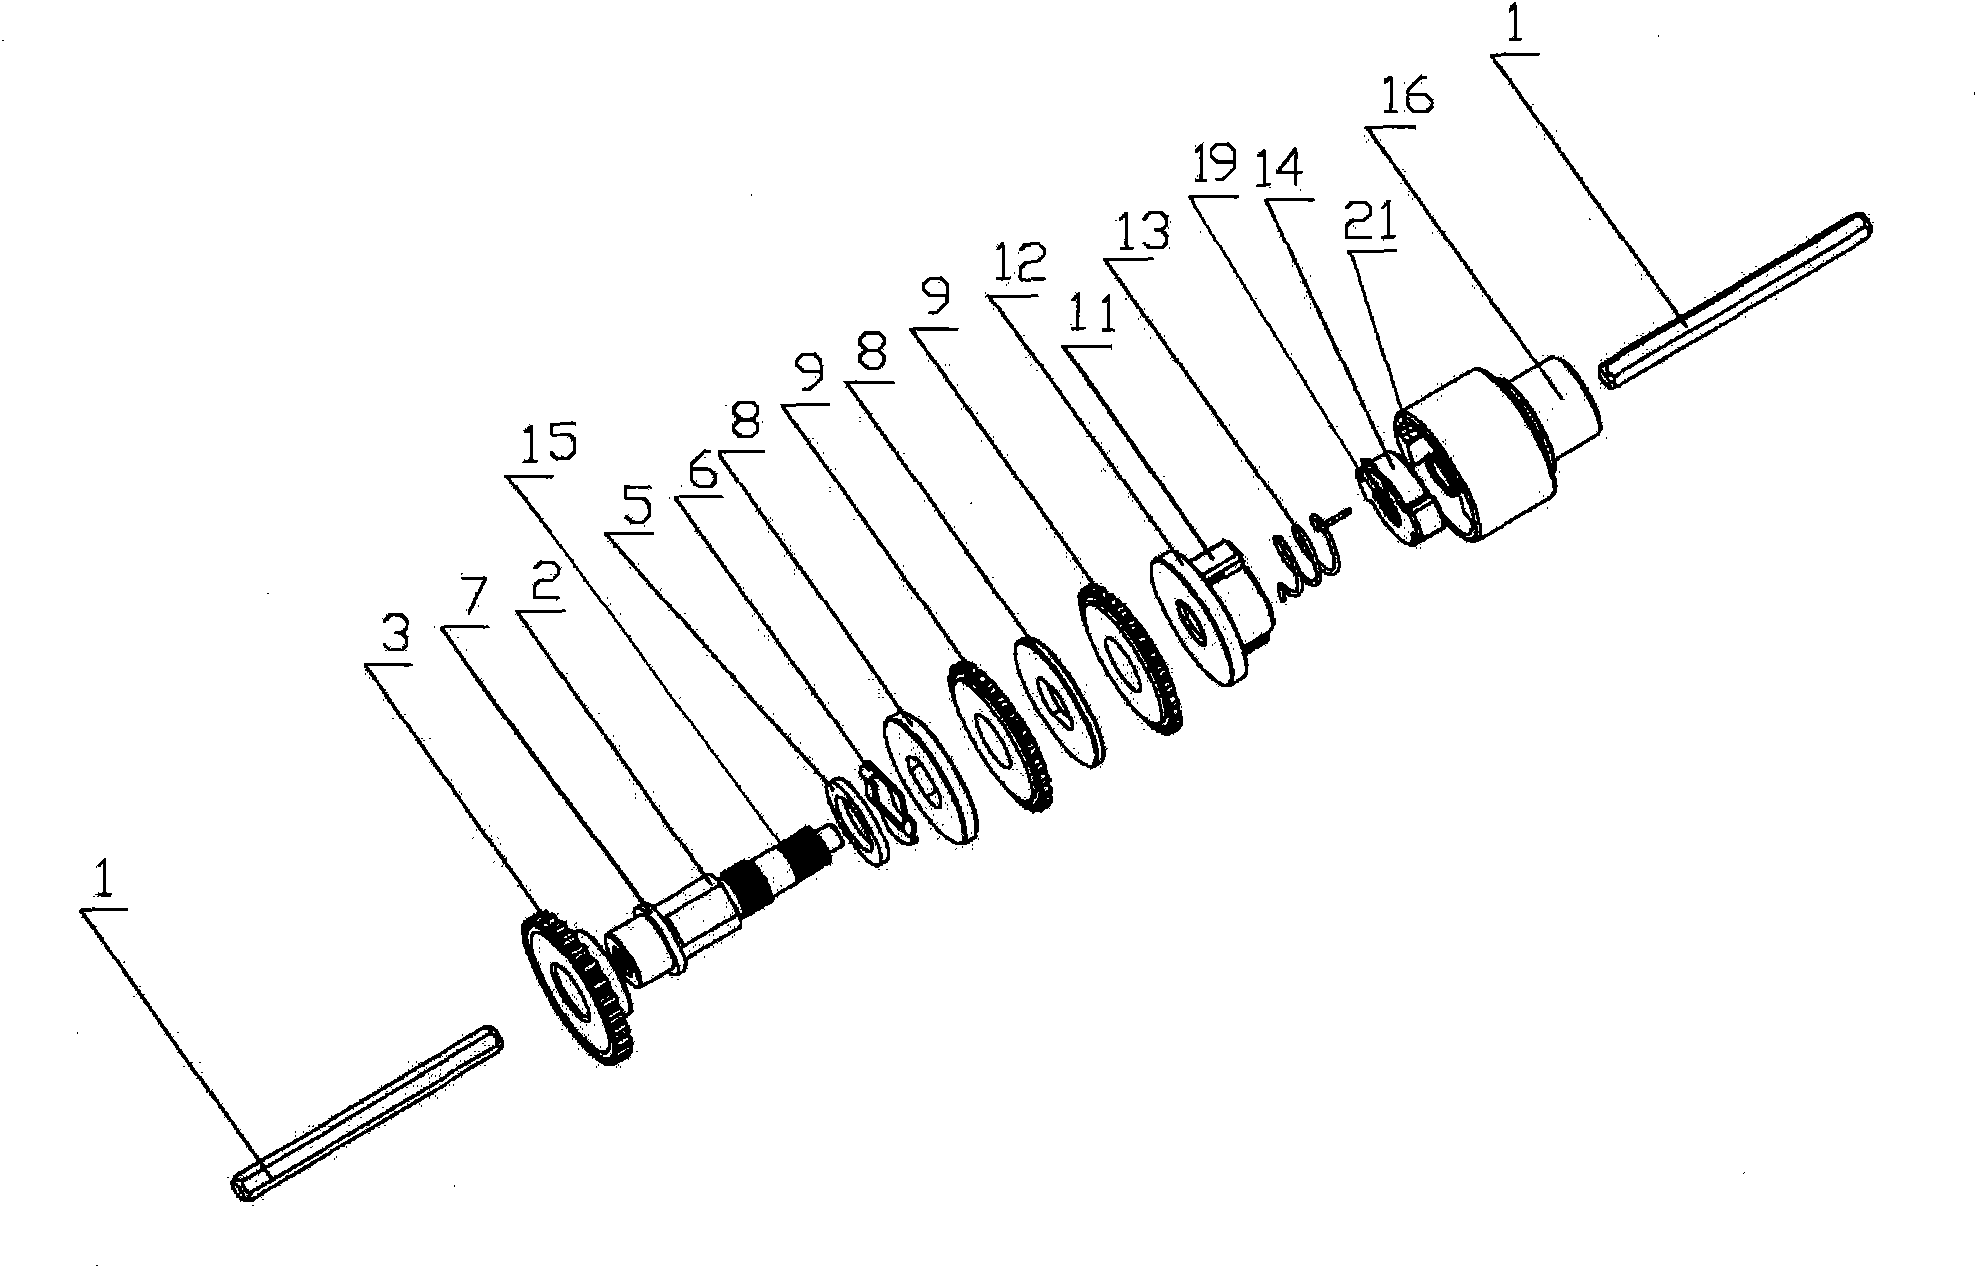 Unidirectional load self-braking spiral braking device